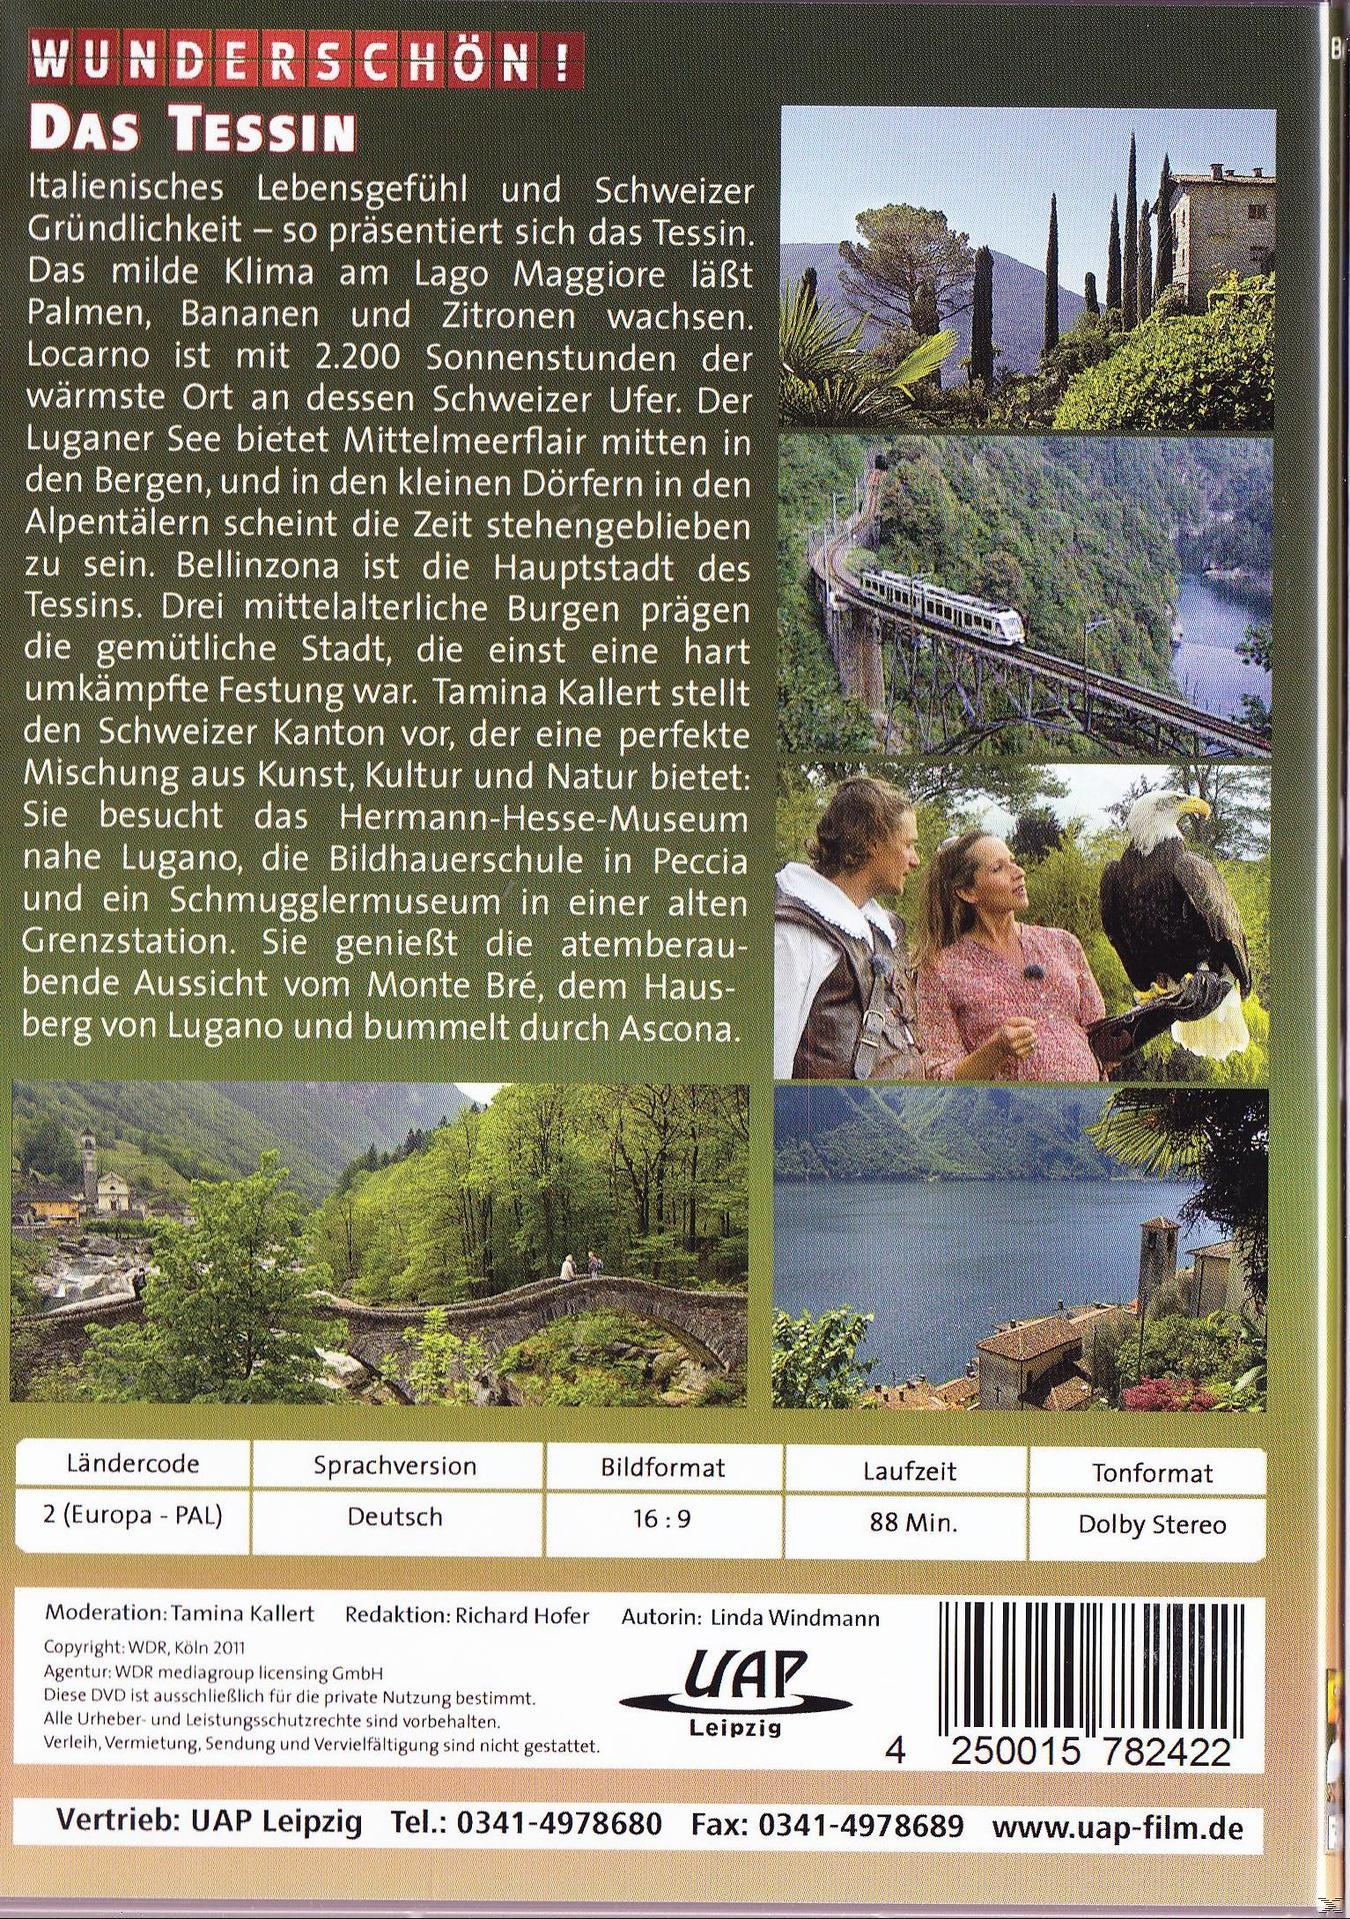 Wunderschön! - Das Tessin: Träumen Lago Maggiore am DVD